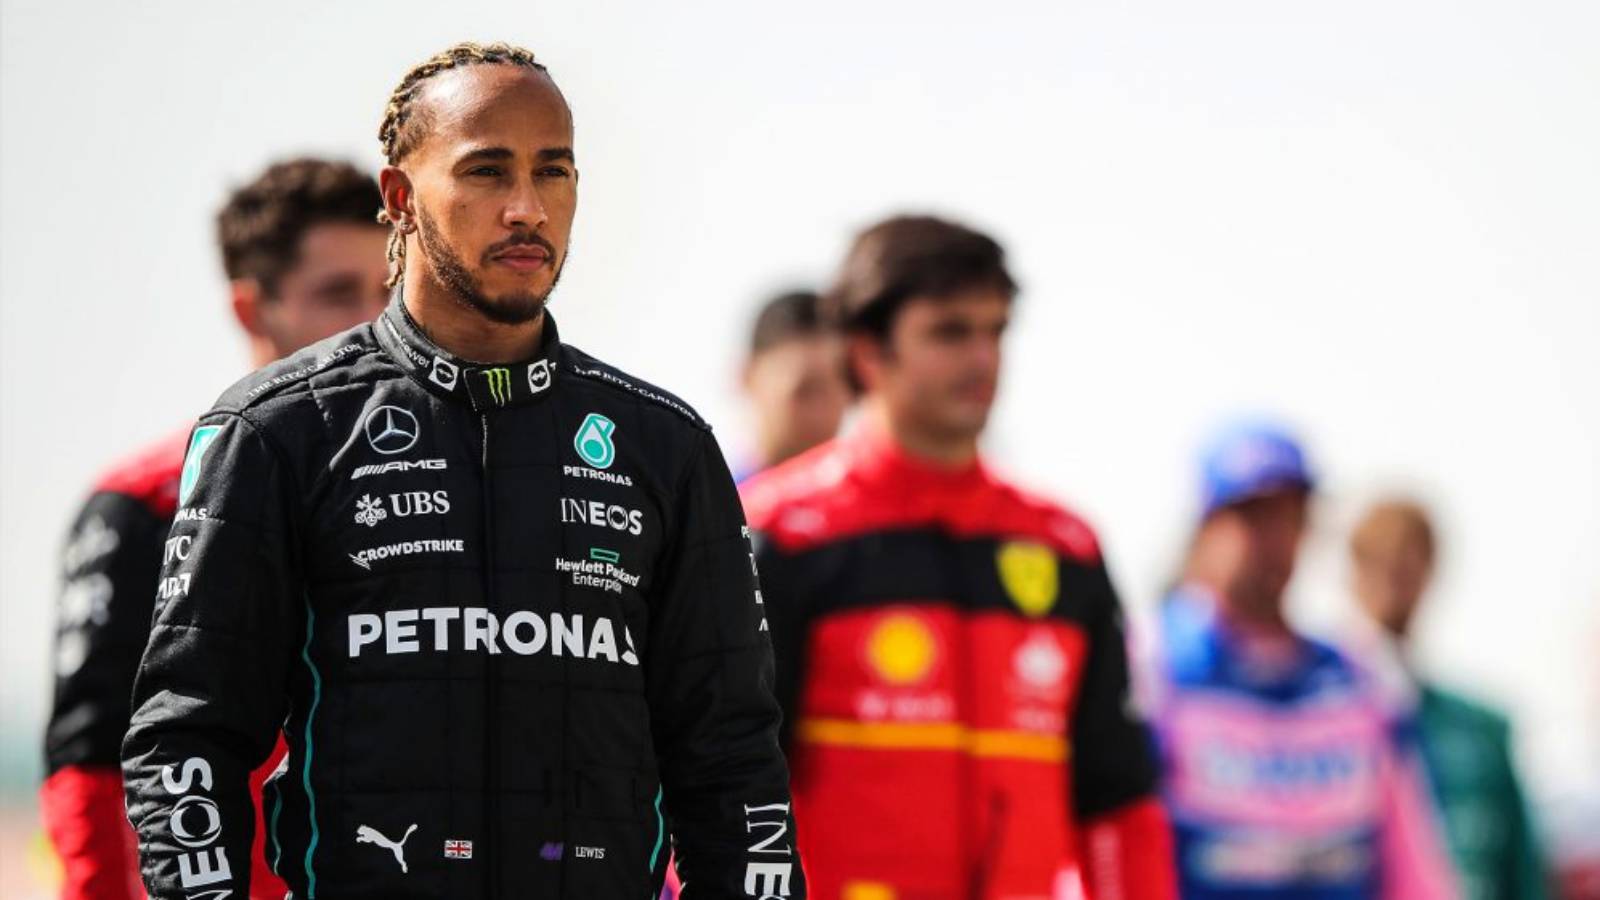 Formuła 1 Lewis Hamilton ogłasza wyścigi w trybie awaryjnym